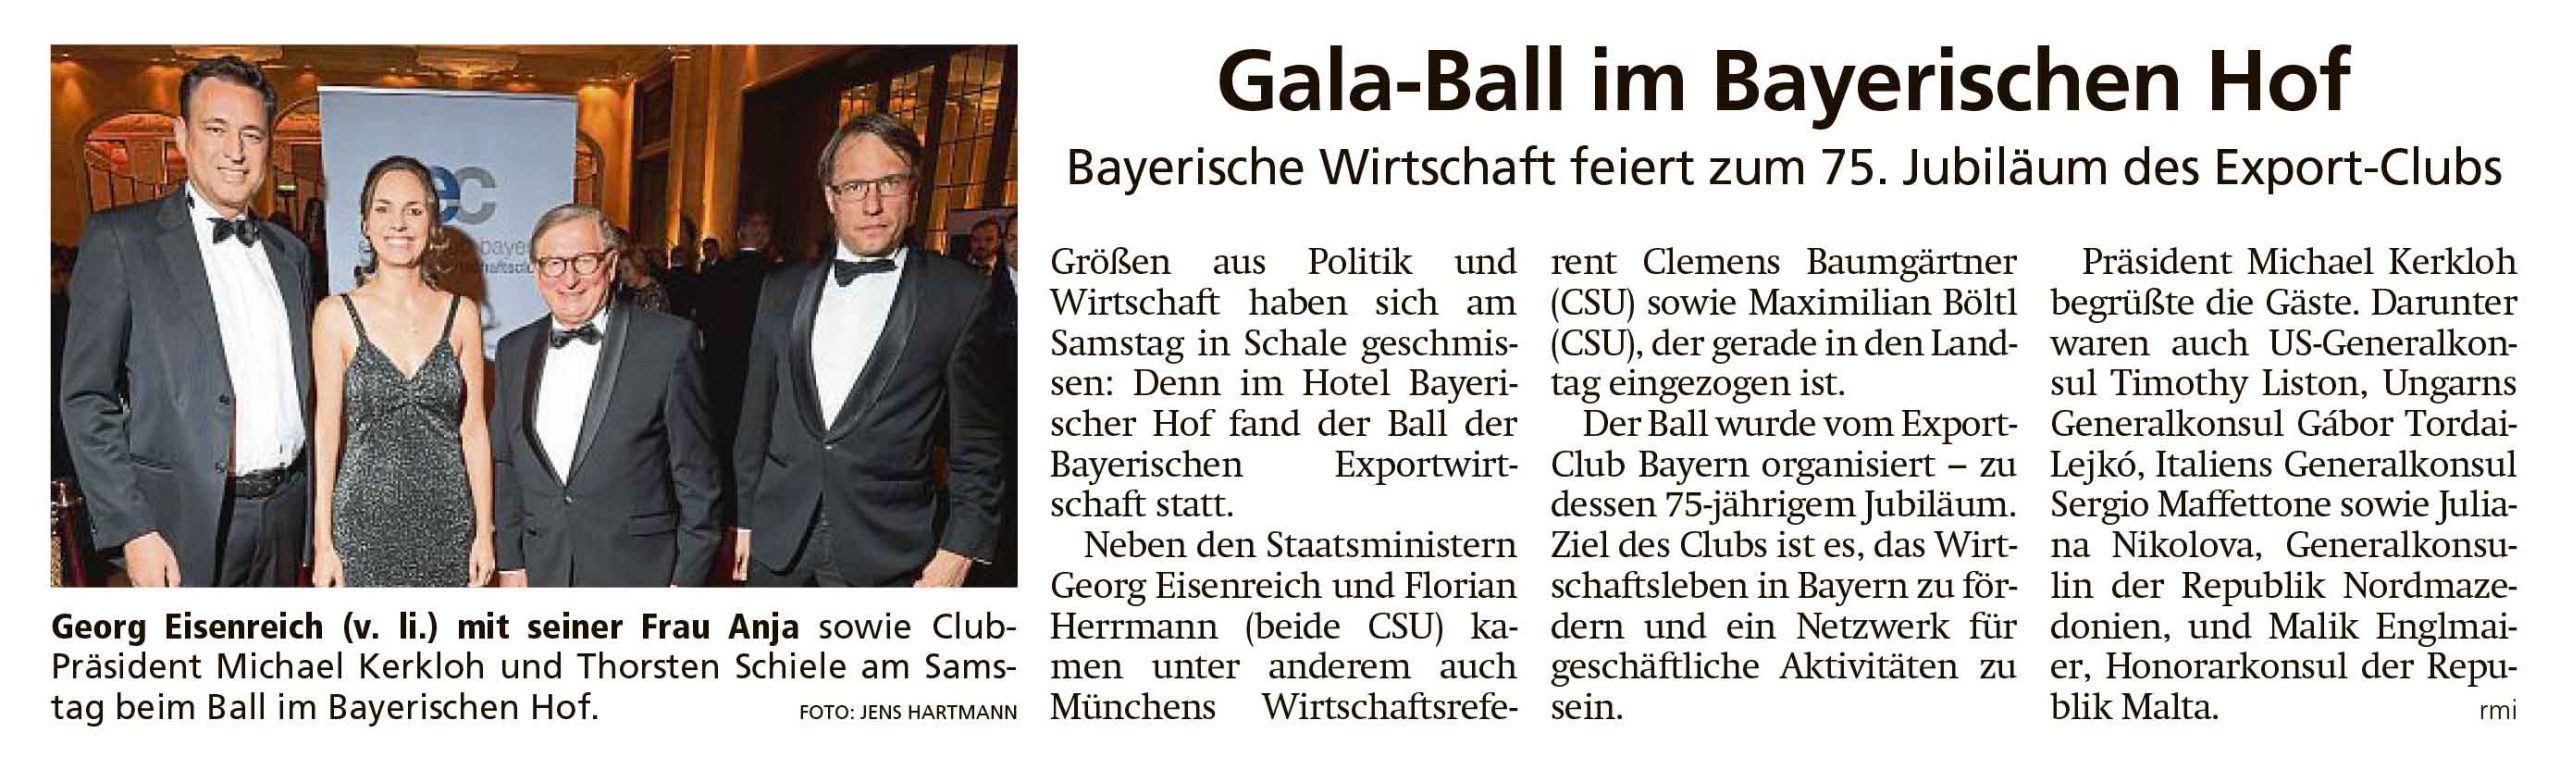 Artikel im Münchner Merkur und TZ "Gala-Ball im Bayerischen Hof / Bayerische Wirtschaft feiert zum 75. Jubiläum des Export-Clubs"